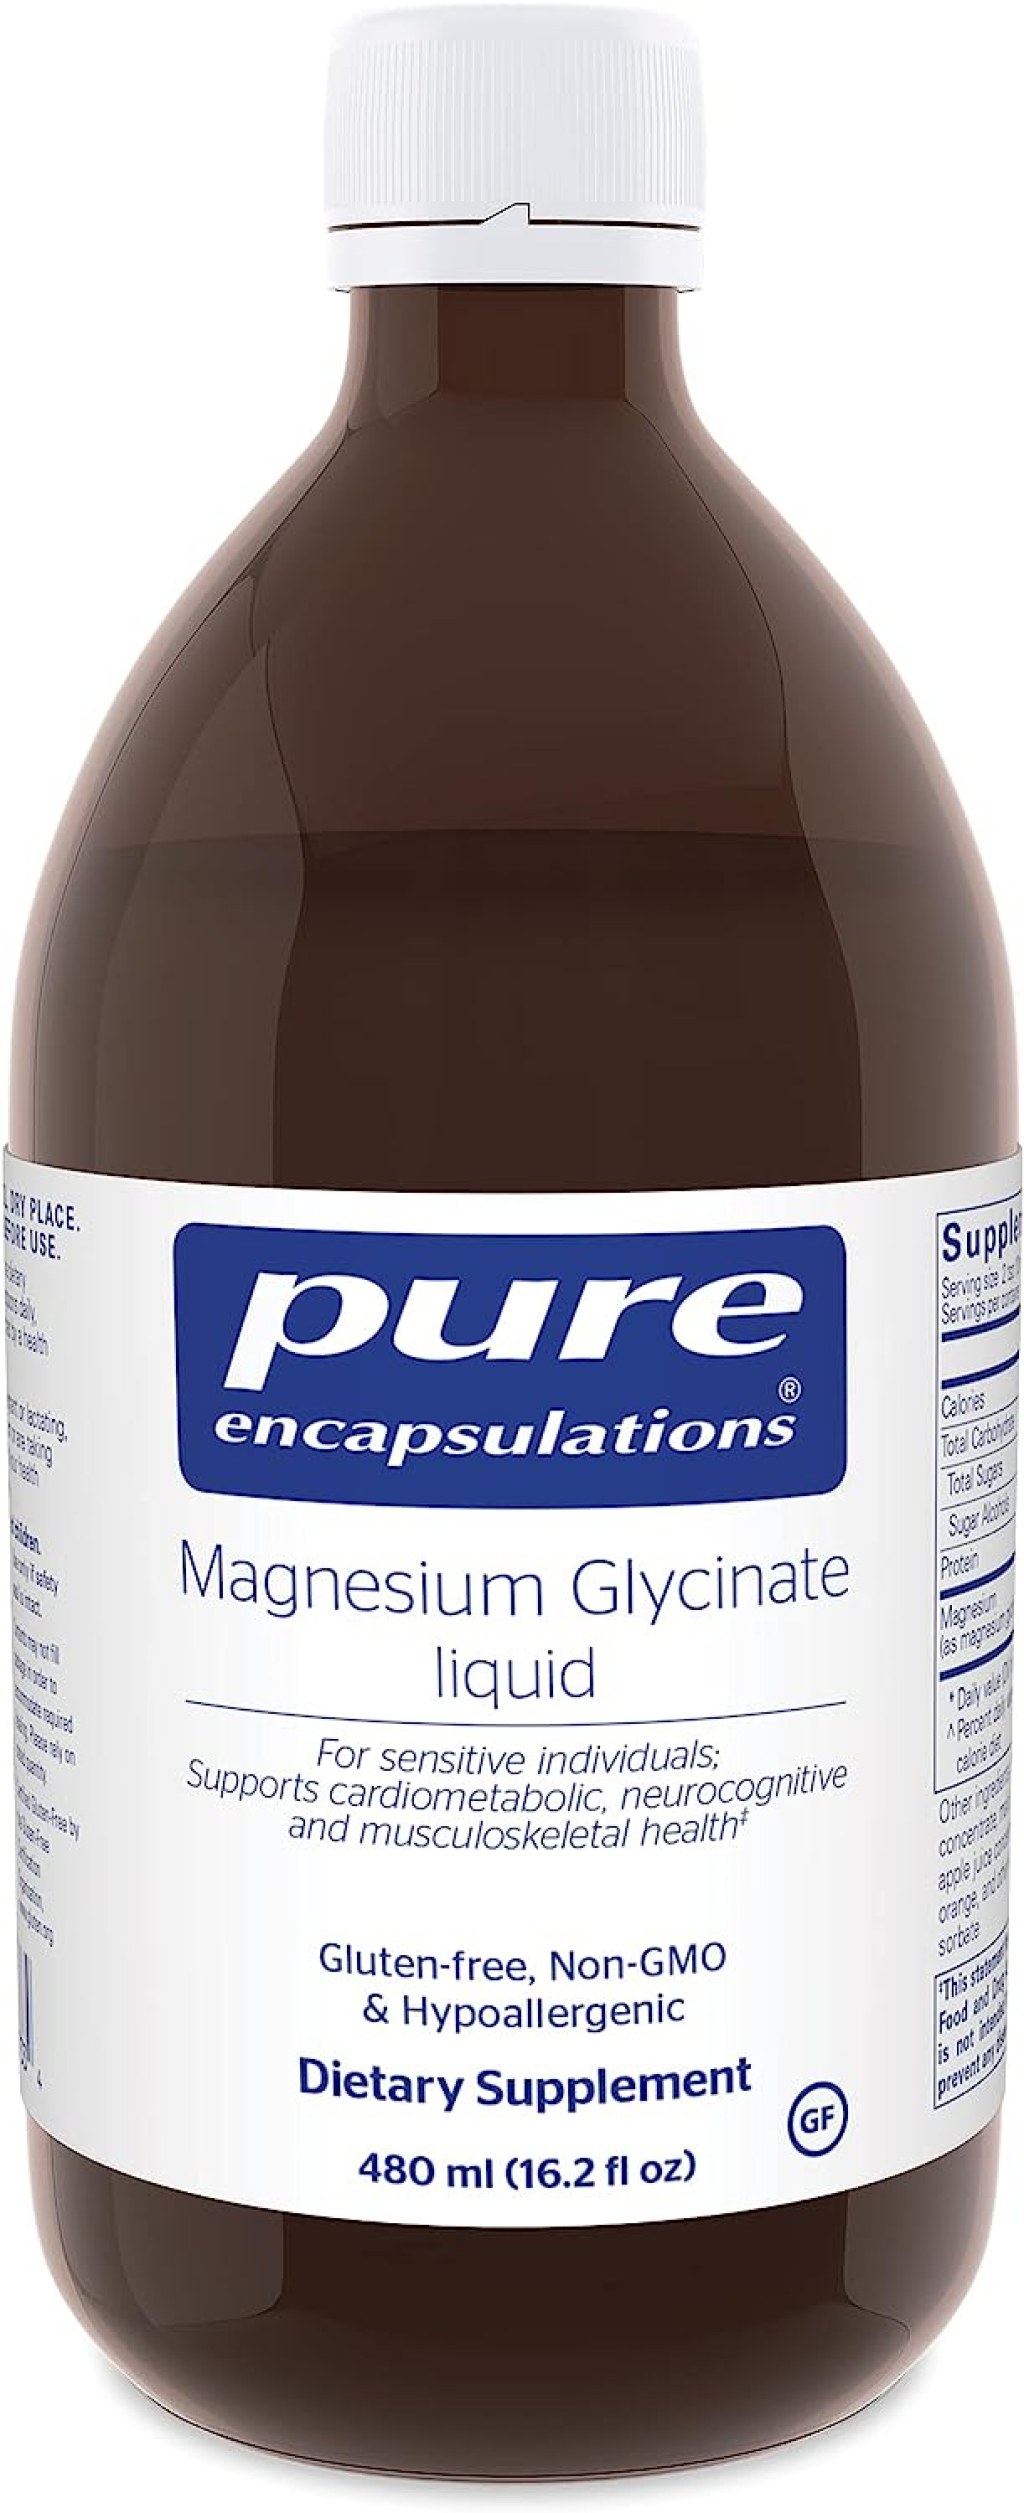 Picture of: Pure Encapsulations Magnesium Glycinate Liquid   Ubuy India